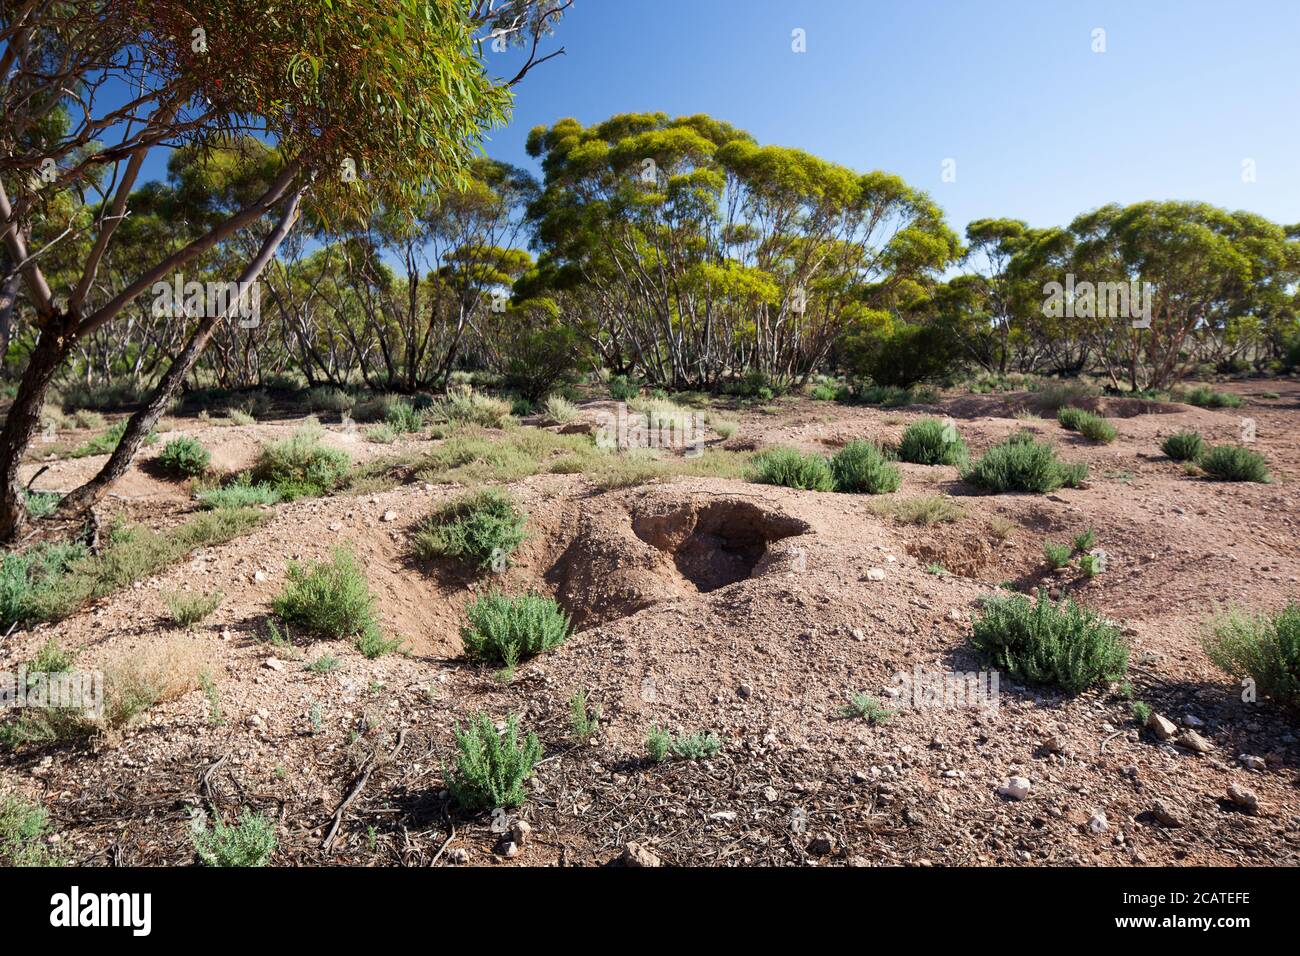 Wombat à tête sud (Lasiorhinus latifrons) warren. Mars 2011. Entwood Sanctuary. Sandleton. Murraylands. Australie méridionale. Australie. Banque D'Images